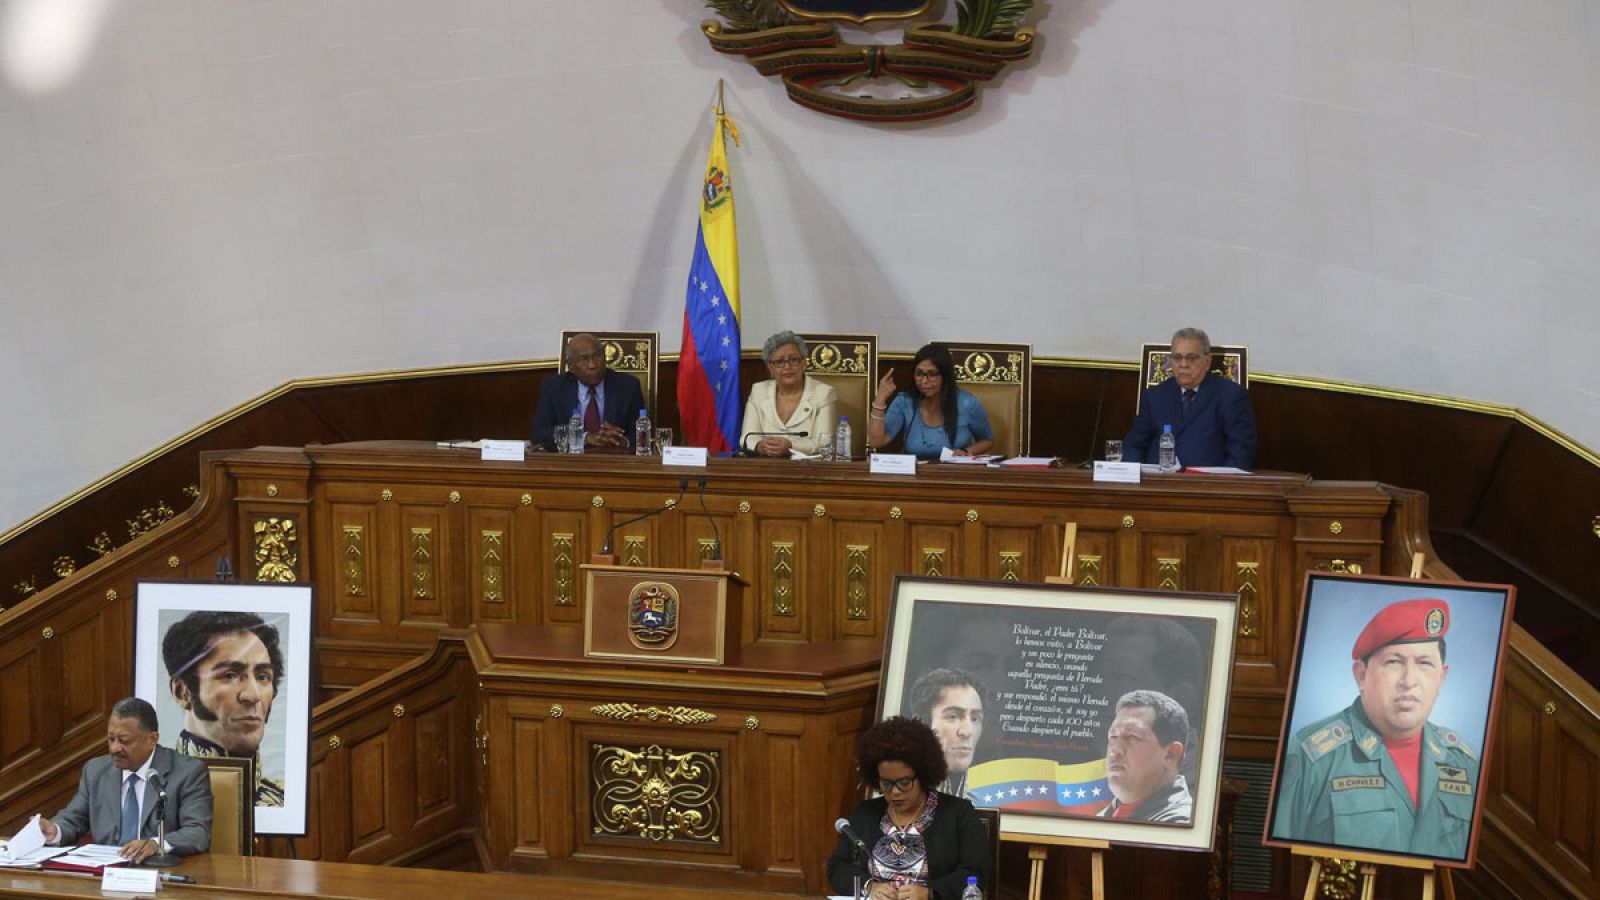 Fotografía cedida por la Agencia Venezolana de Noticias que muestra una sesión de la Asamblea Nacional Constituyente celebrada el viernes 11 de agosto de 2017.